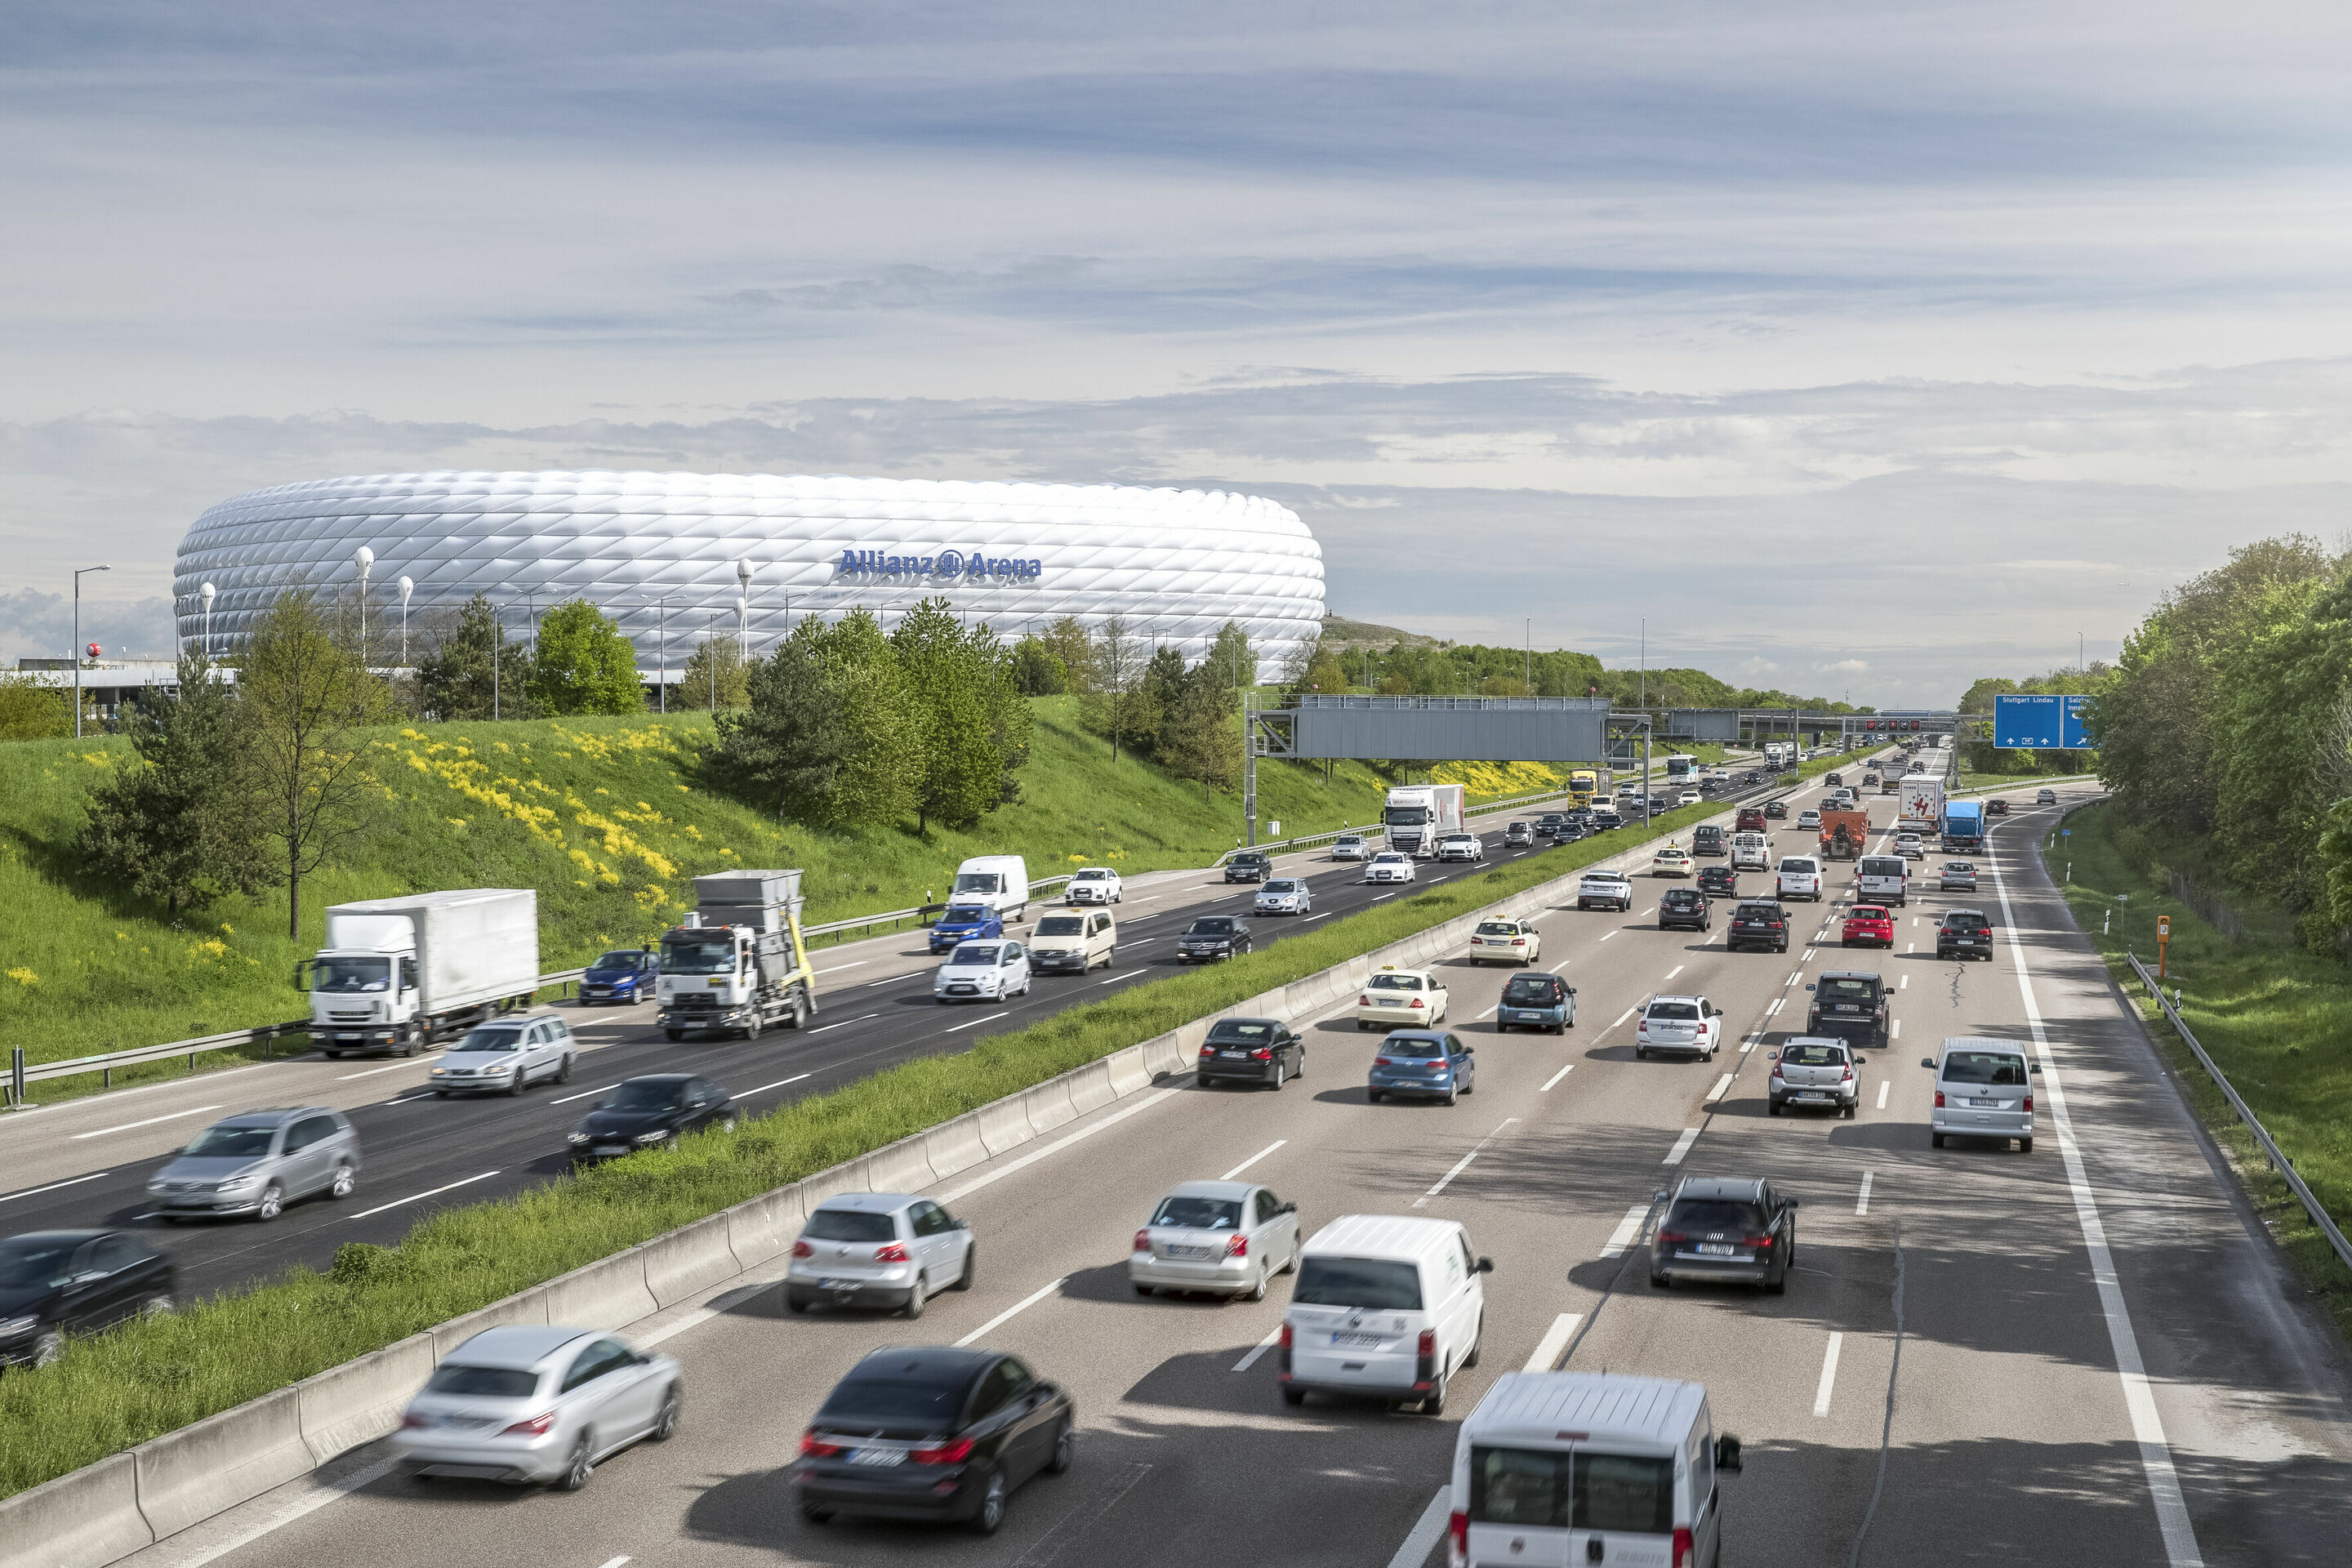 Traffic in Munich